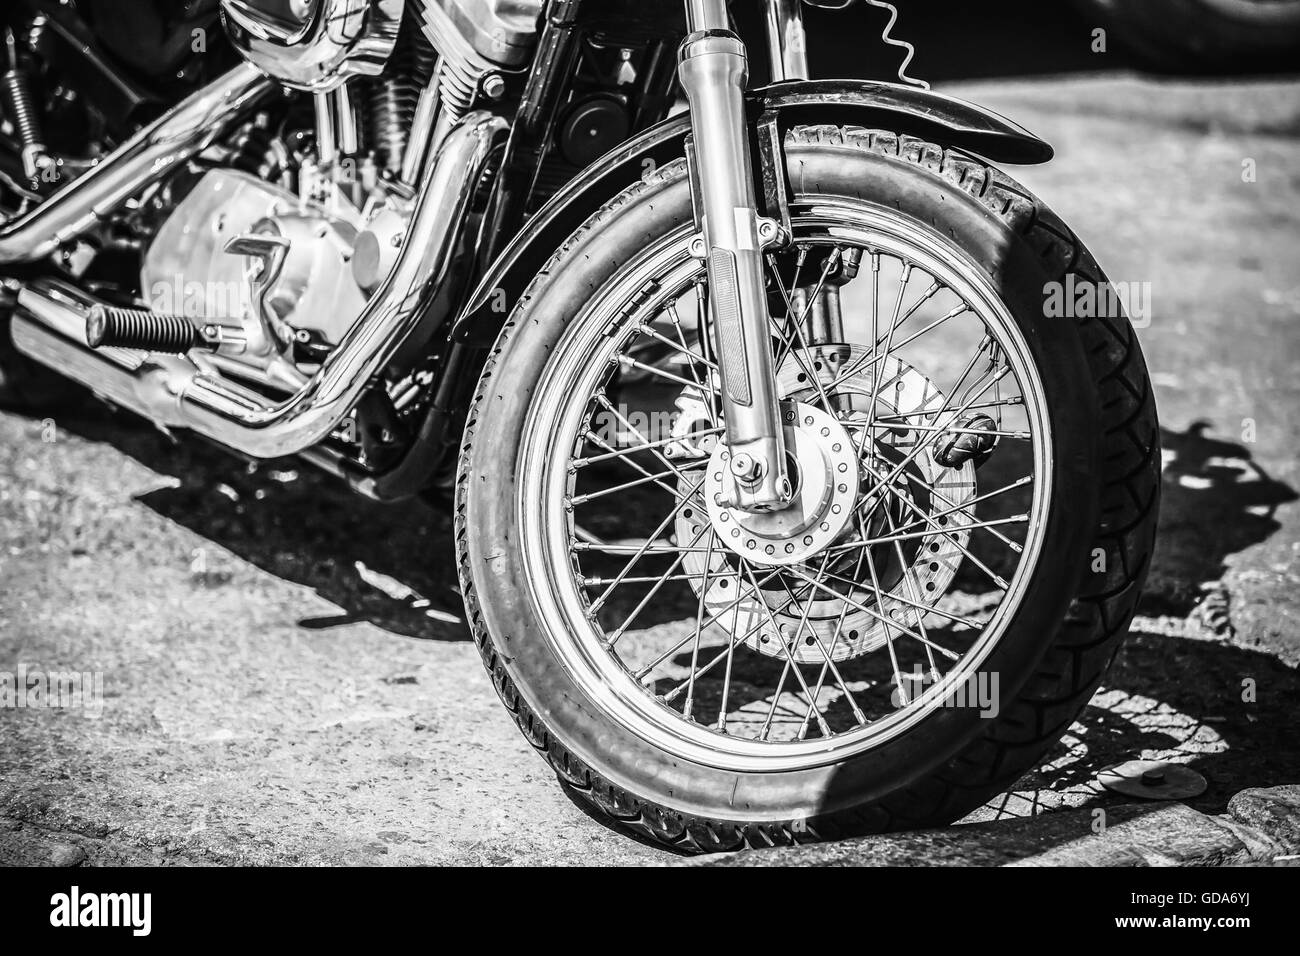 Motorrad vorne Rad und Bremse Systeme für Motorräder hautnah. Schwarz und weiß Farben Stockfoto